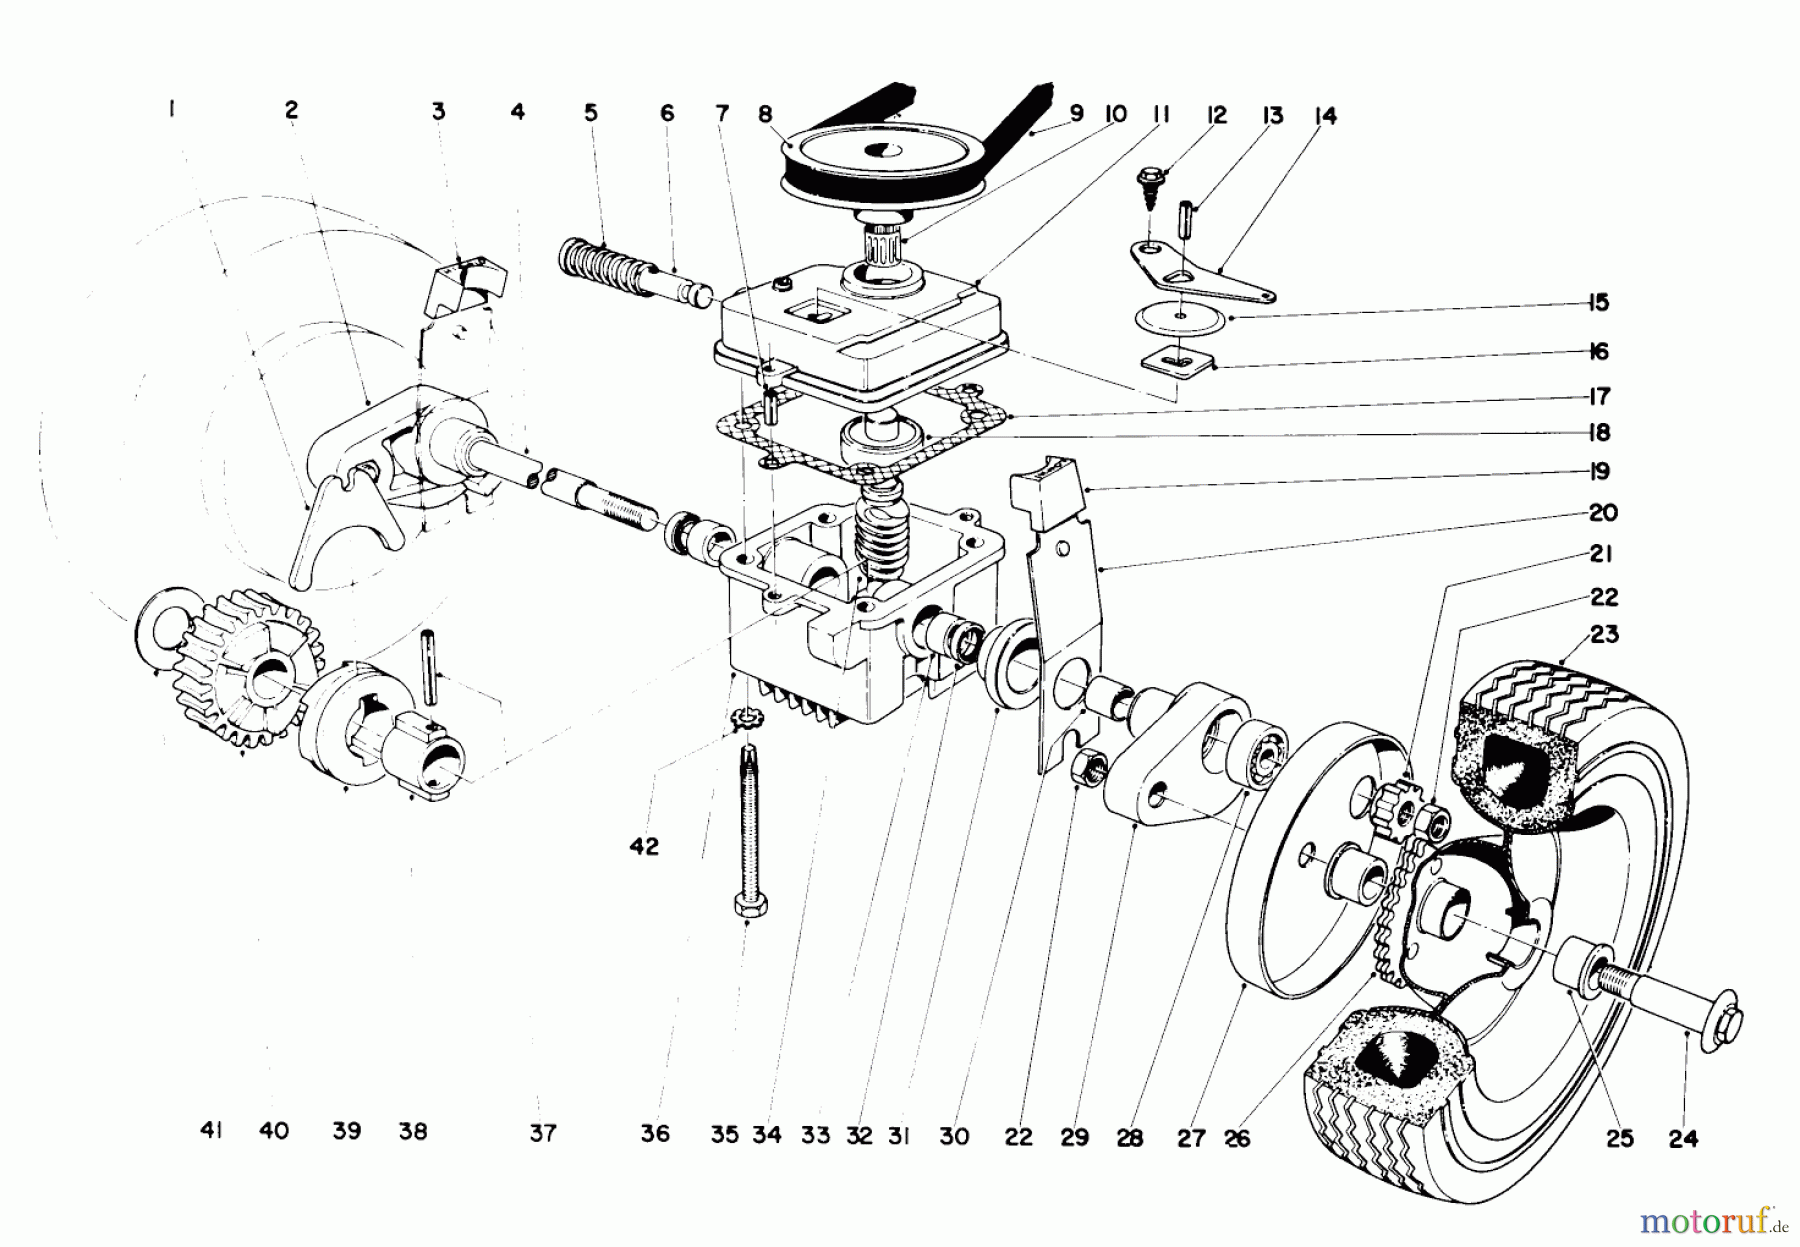  Toro Neu Mowers, Walk-Behind Seite 1 19367 - Toro Whirlwind Lawnmower, 1971 (1000001-1999999) 21